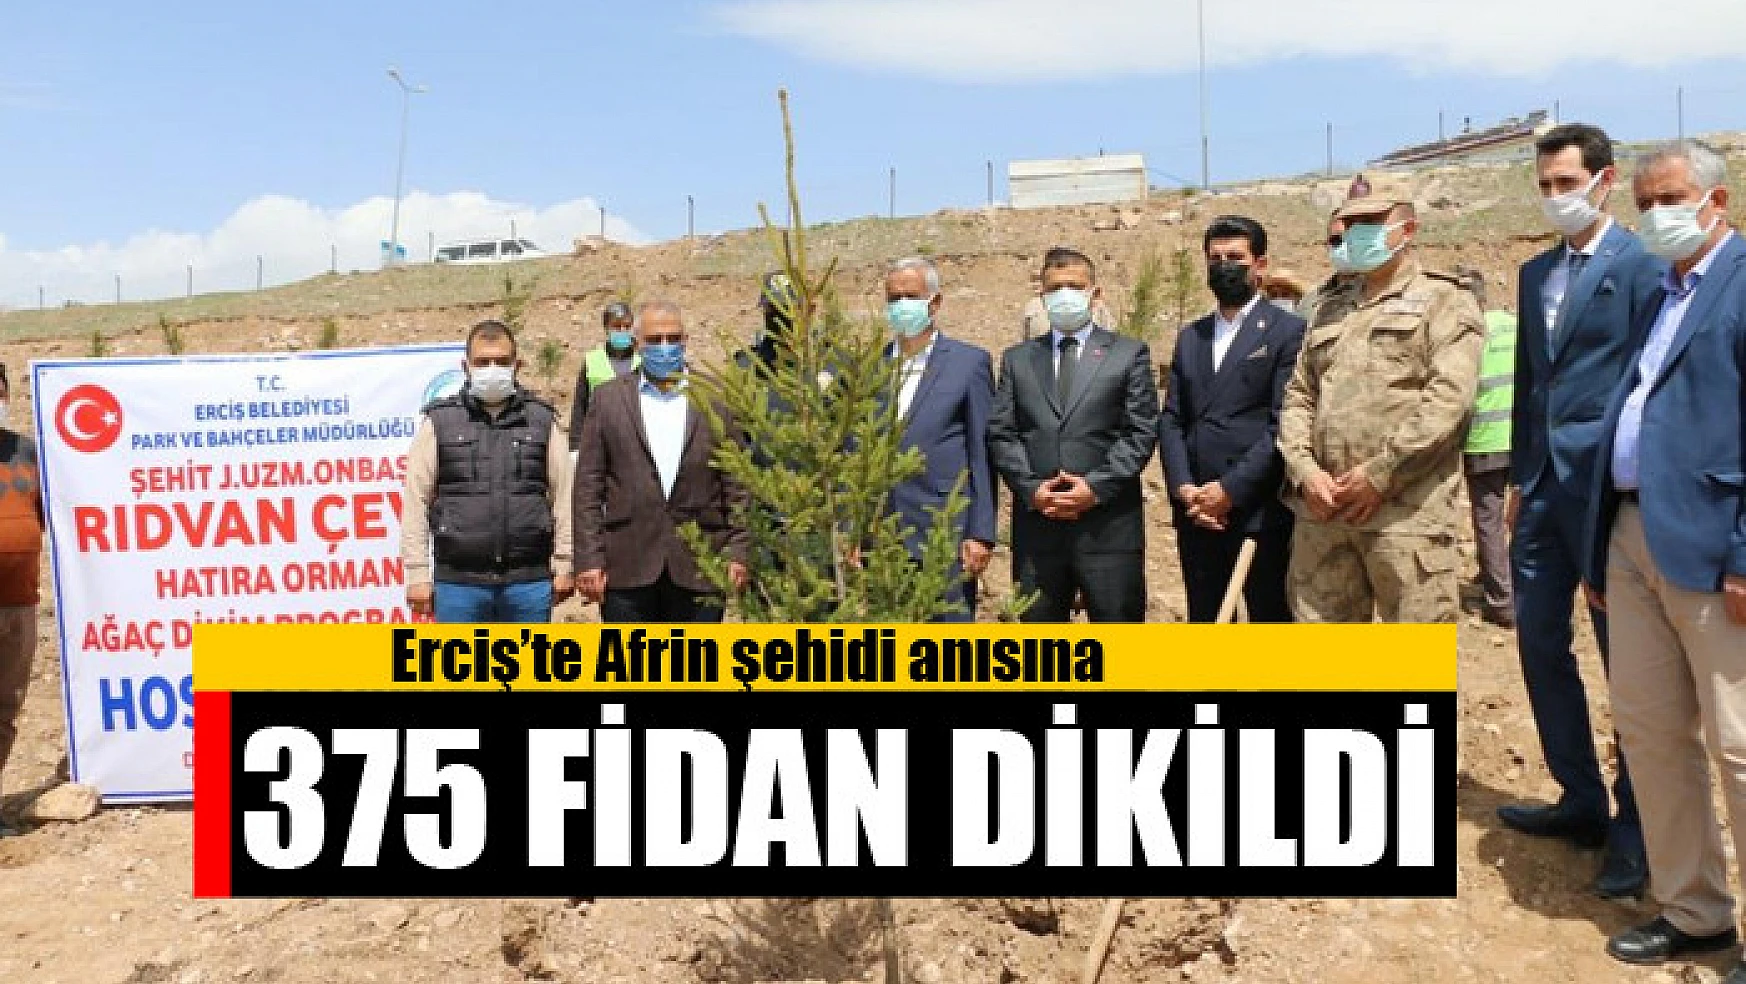 Erciş'te Afrin şehidi anısına 375 fidan dikildi